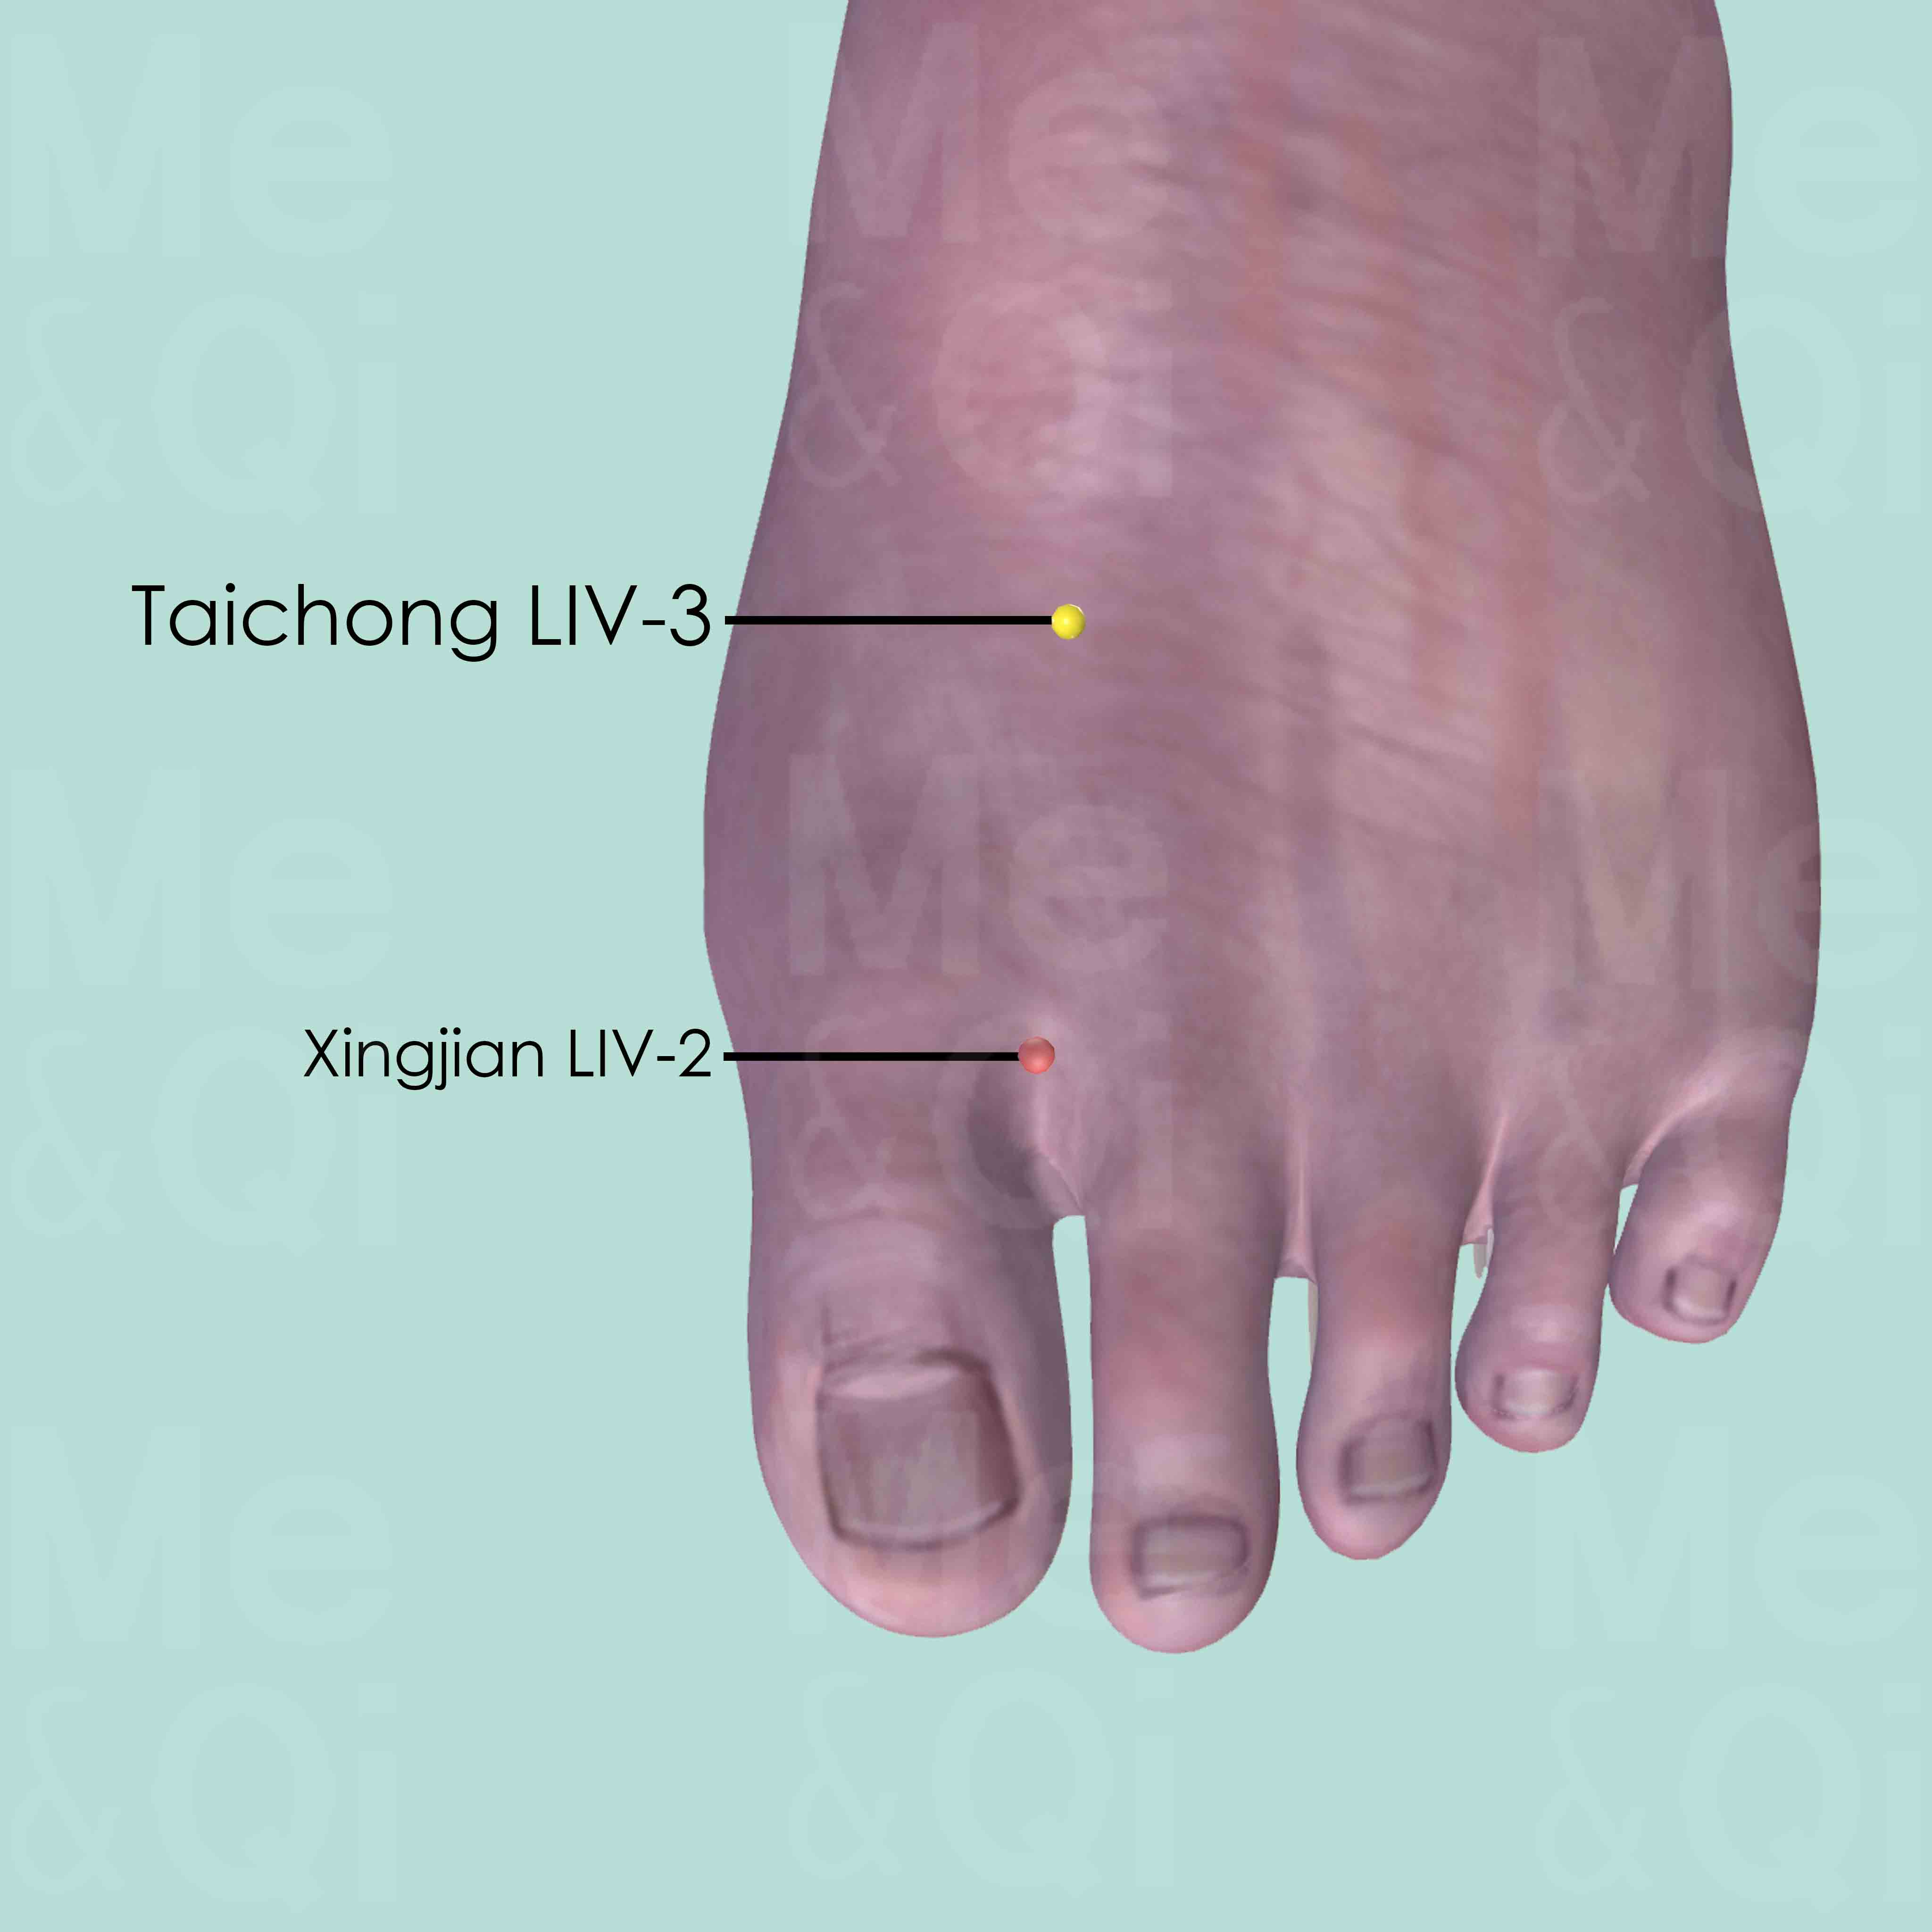 Taichong LIV-3